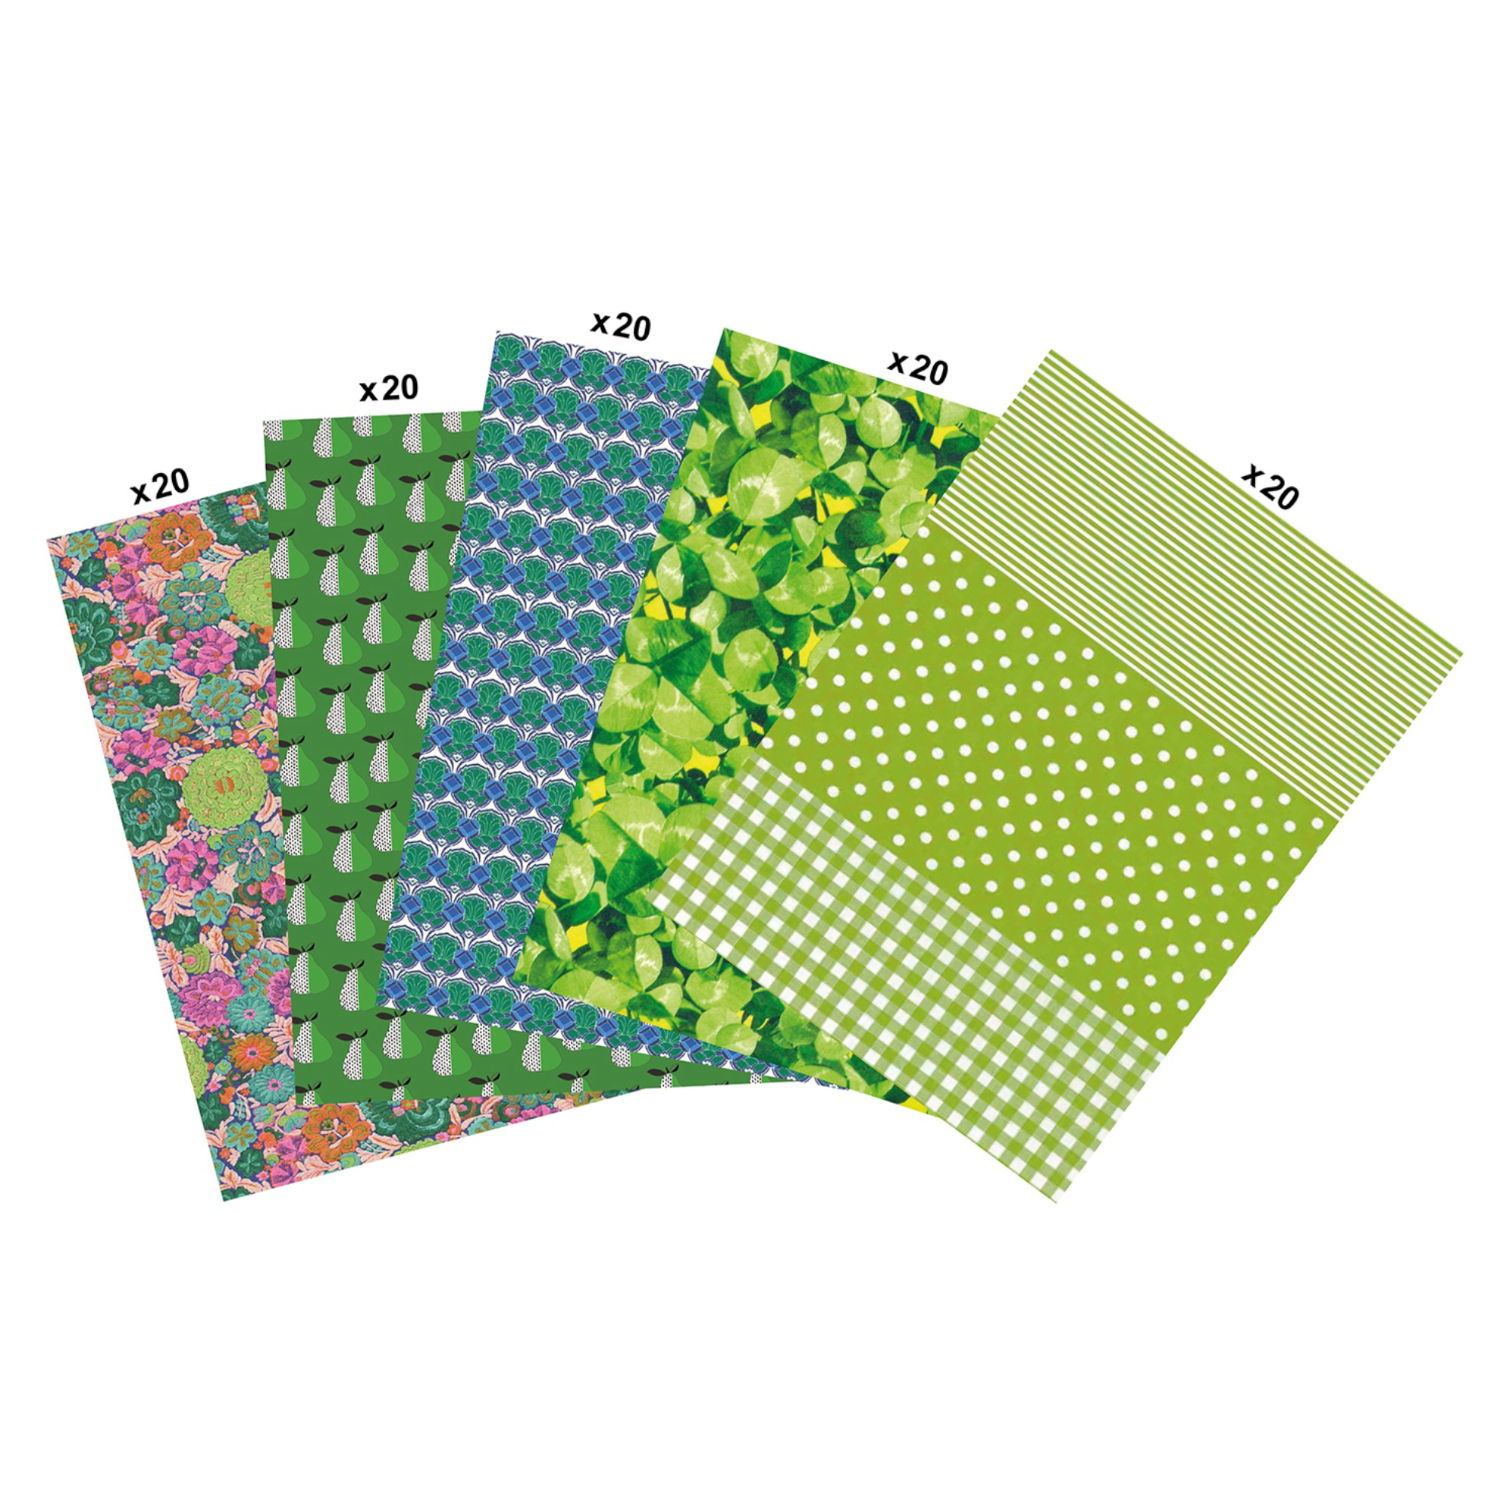 NEU Decoupage- / Decopatch-Papier Maxi-Packung, 100 Bogen 30 x 40 cm, Grün